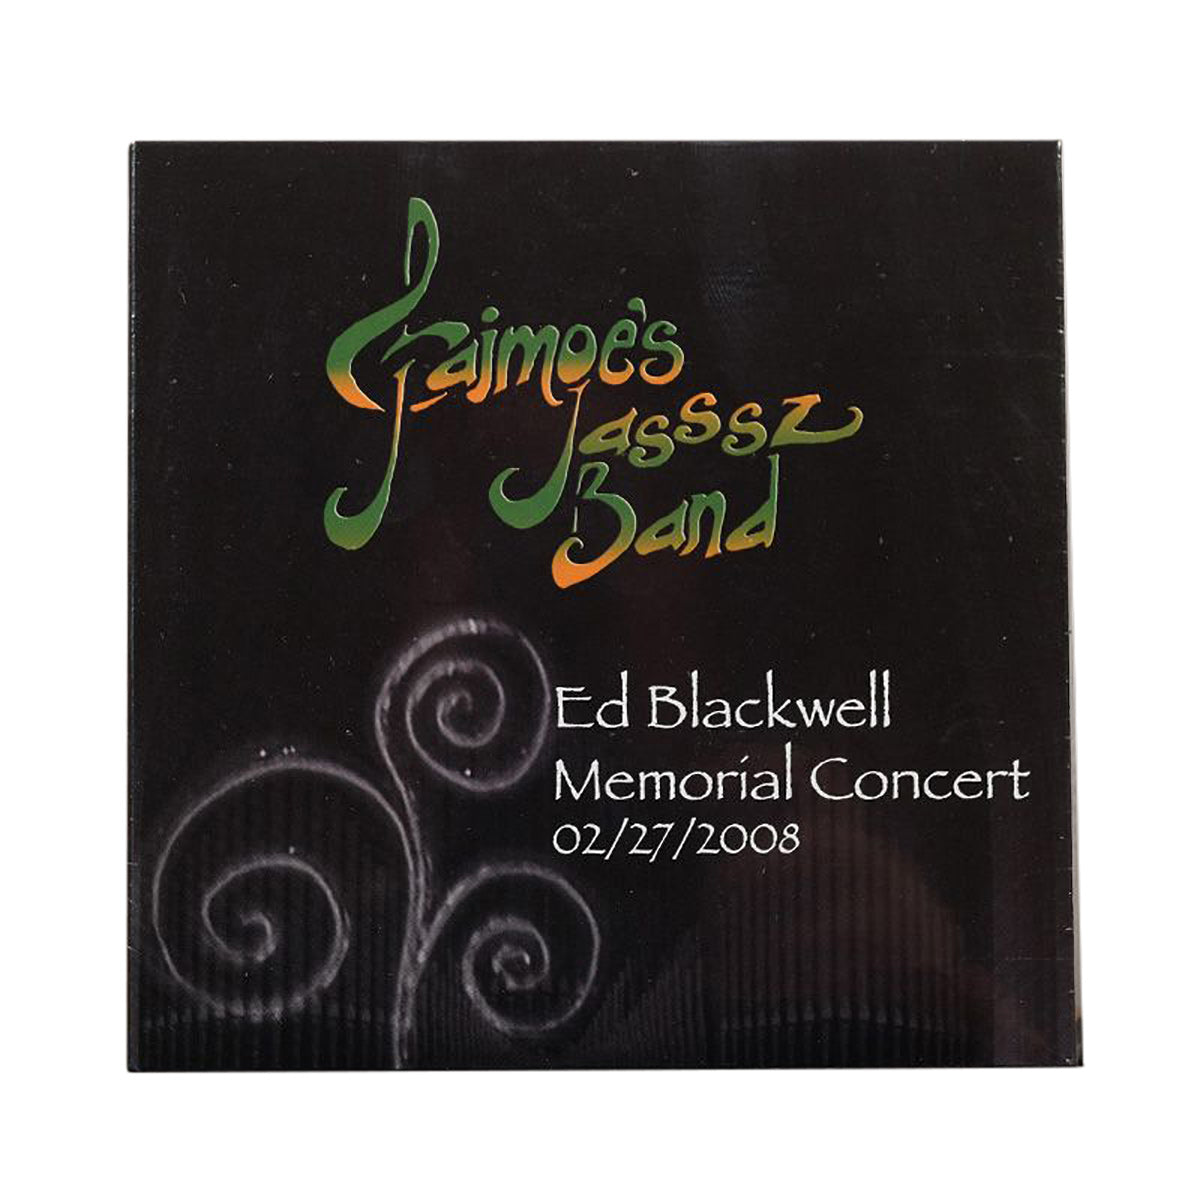 Jaimoe's Jasssz Band – Ed Blackwell Memorial Concert CD